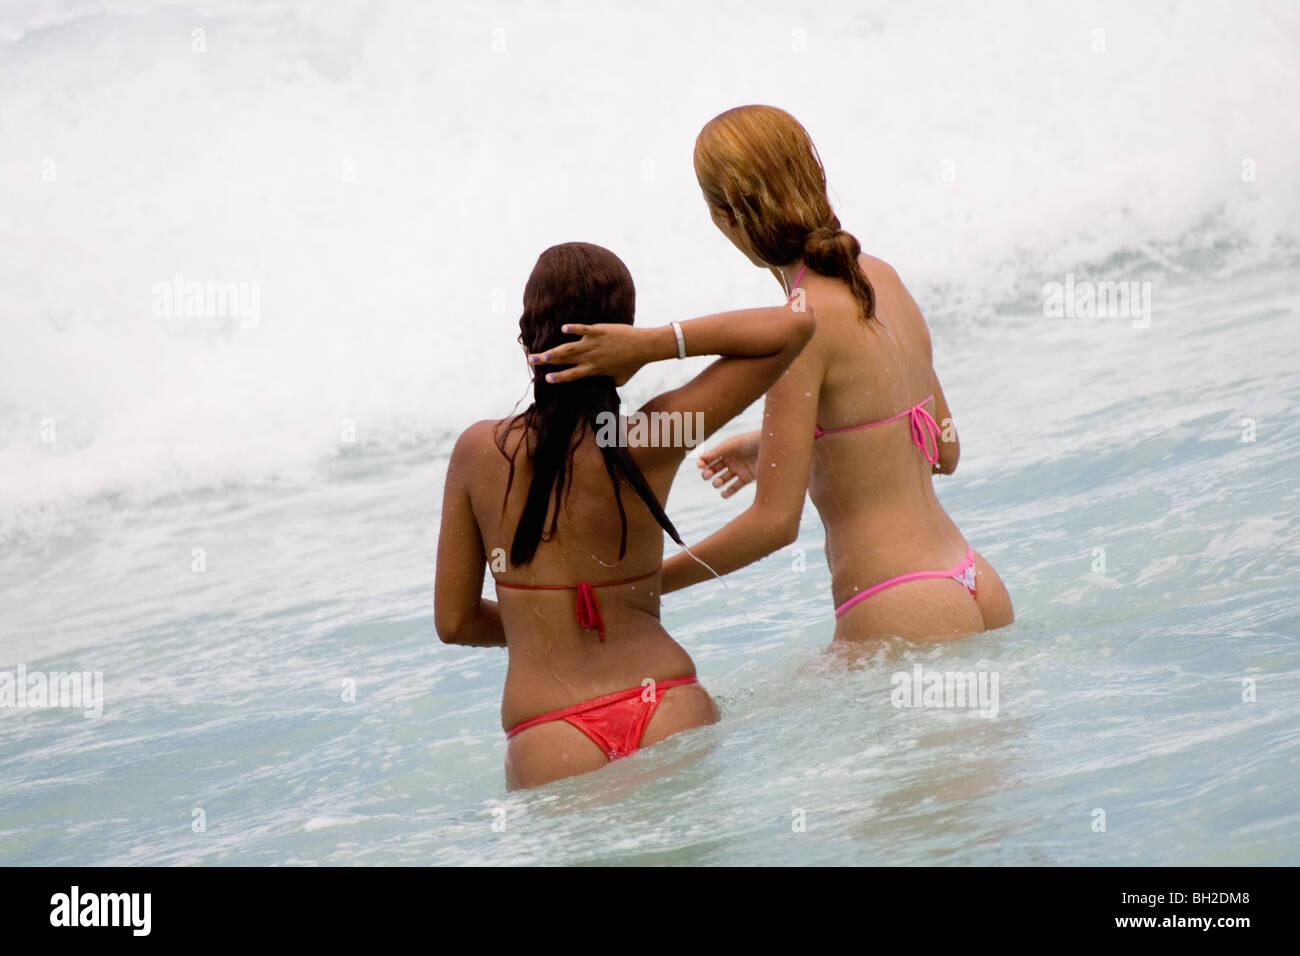 Young Brazilian girls playing in the surf on Copacabana Beach in Rio de Janeiro in Brazil Stock Photo